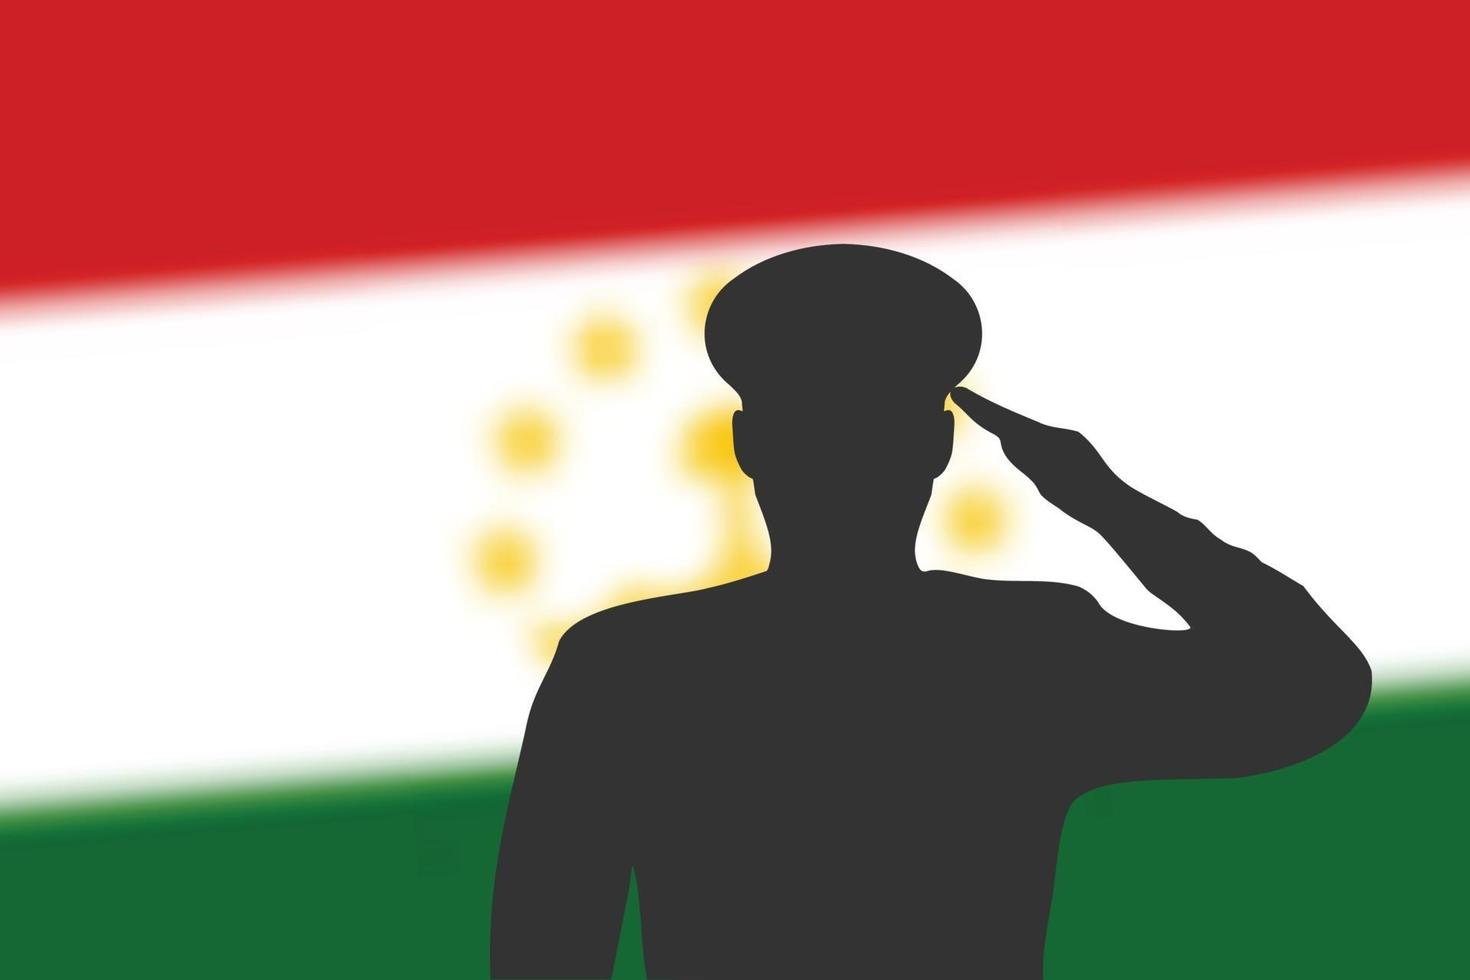 sagoma di saldatura su sfondo sfocato con bandiera del tagikistan. vettore